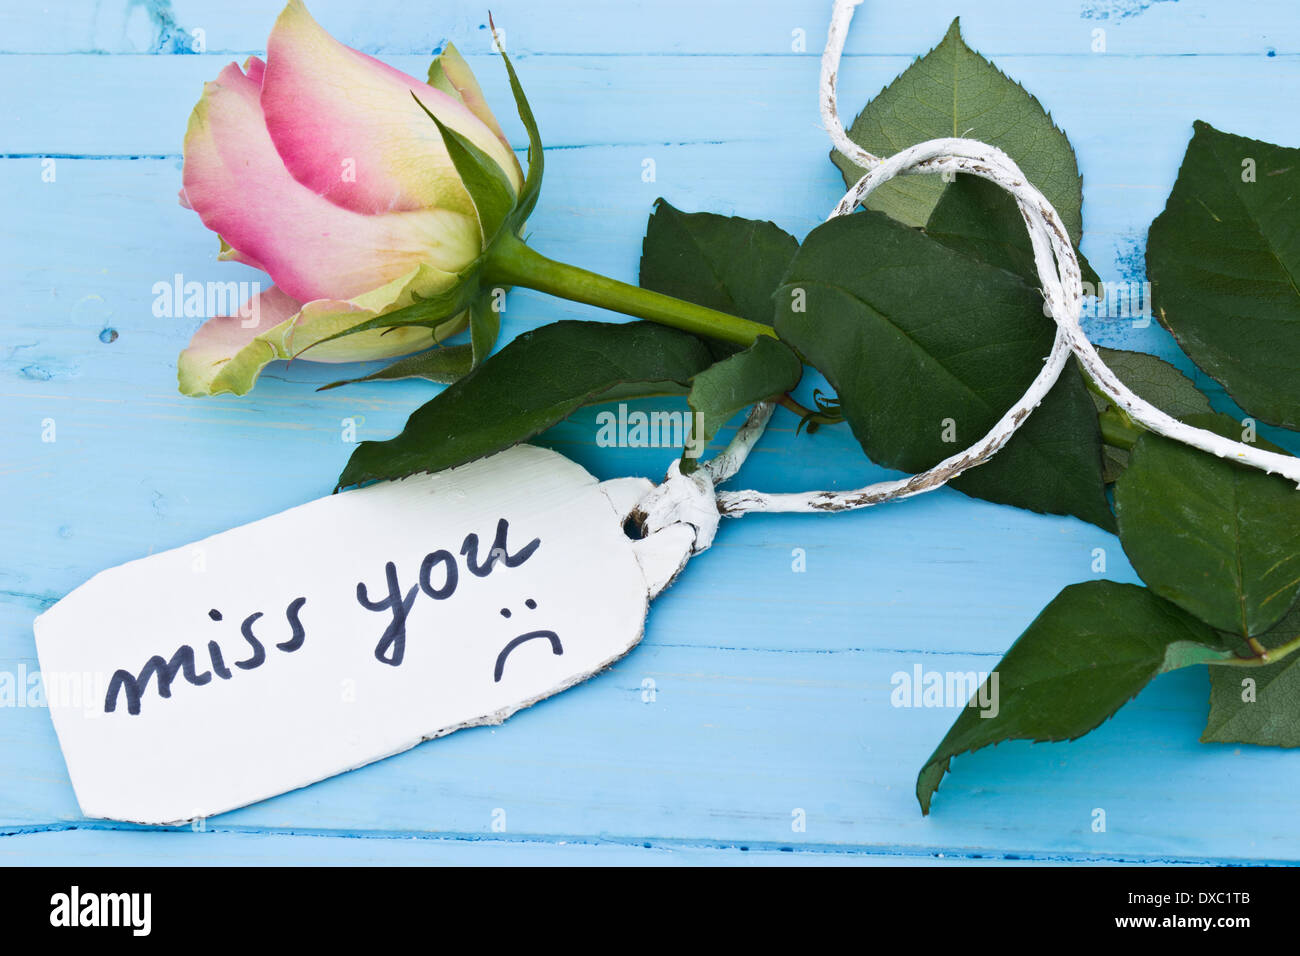 Une rose rose sur un fond bleu et une étiquette personnalisée disant 'Miss you'. Parfait pour les amoureux et pour la Saint Valentin. Banque D'Images